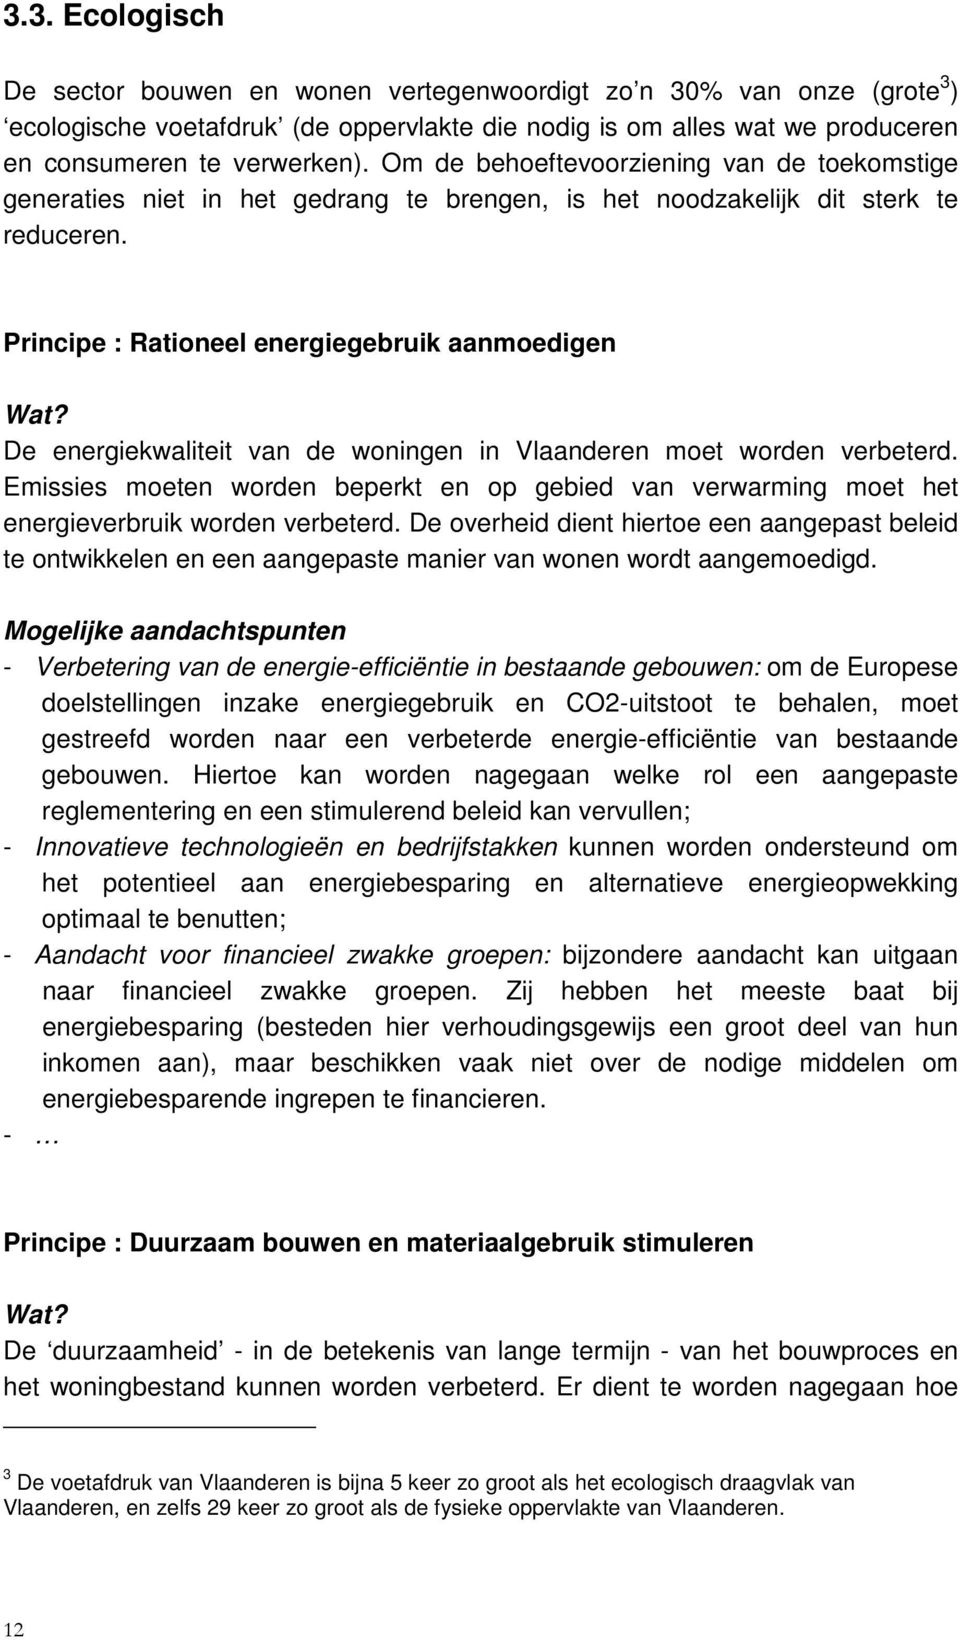 Principe : Rationeel energiegebruik aanmoedigen De energiekwaliteit van de woningen in Vlaanderen moet worden verbeterd.